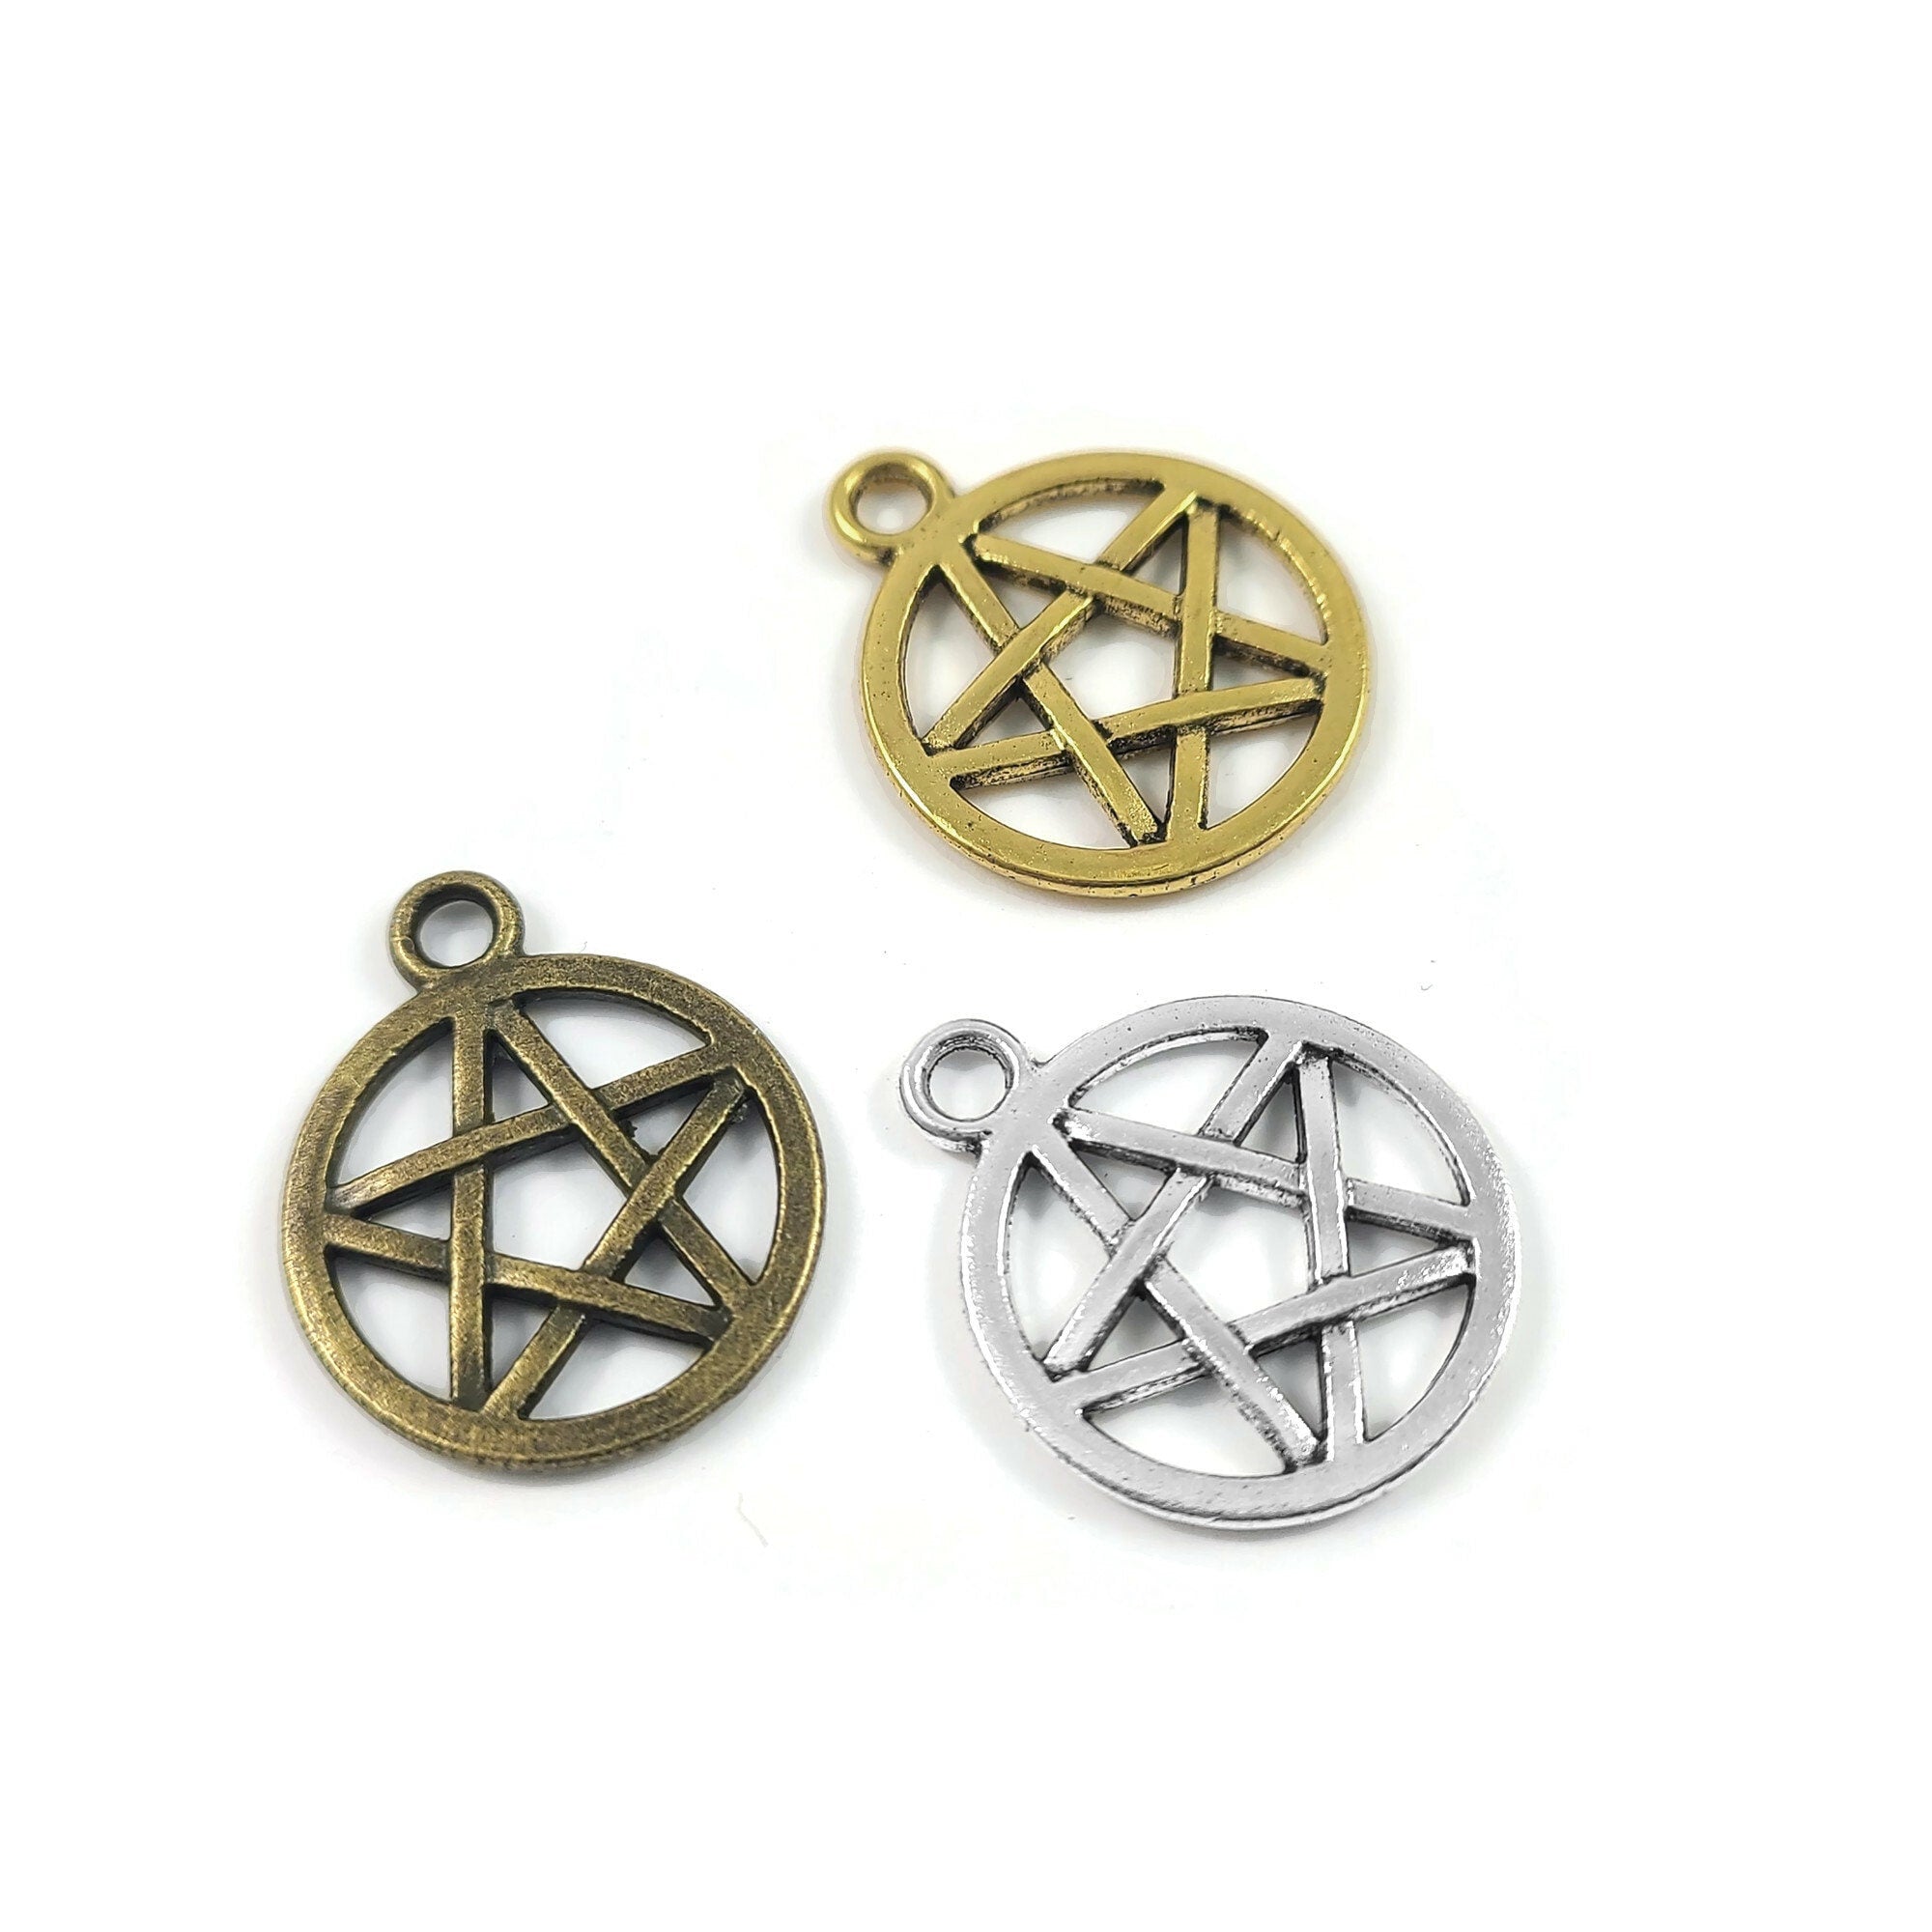 WYSIWYG 10pcs 19x15mm Charms Pentagram Star Charms For Jewelry